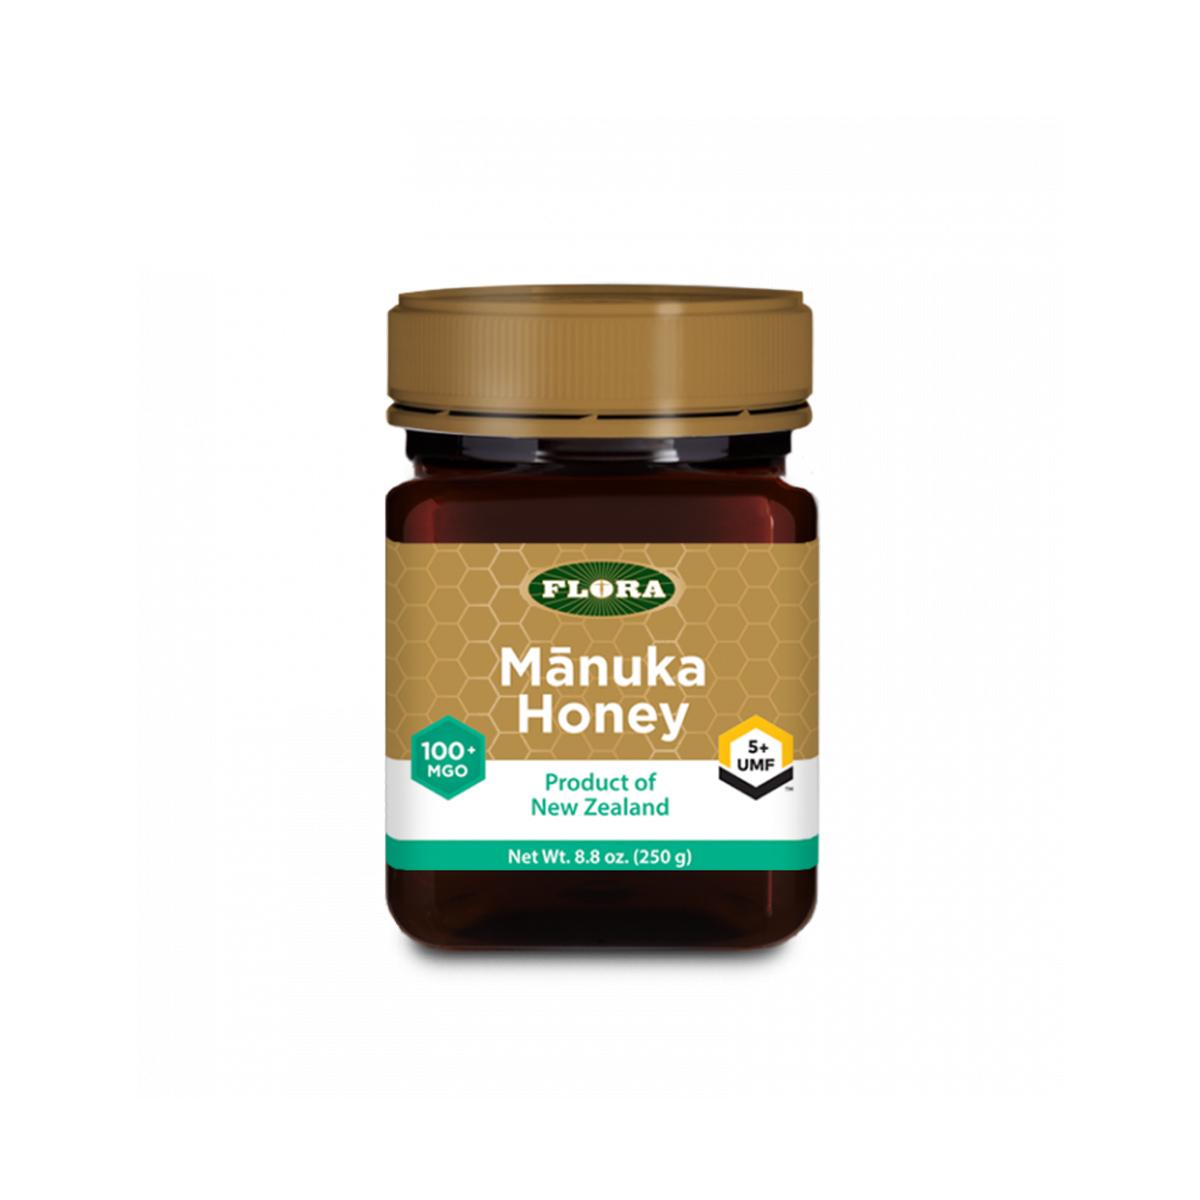 Primary image of Manuka Honey MGO 100+/5+ UMF